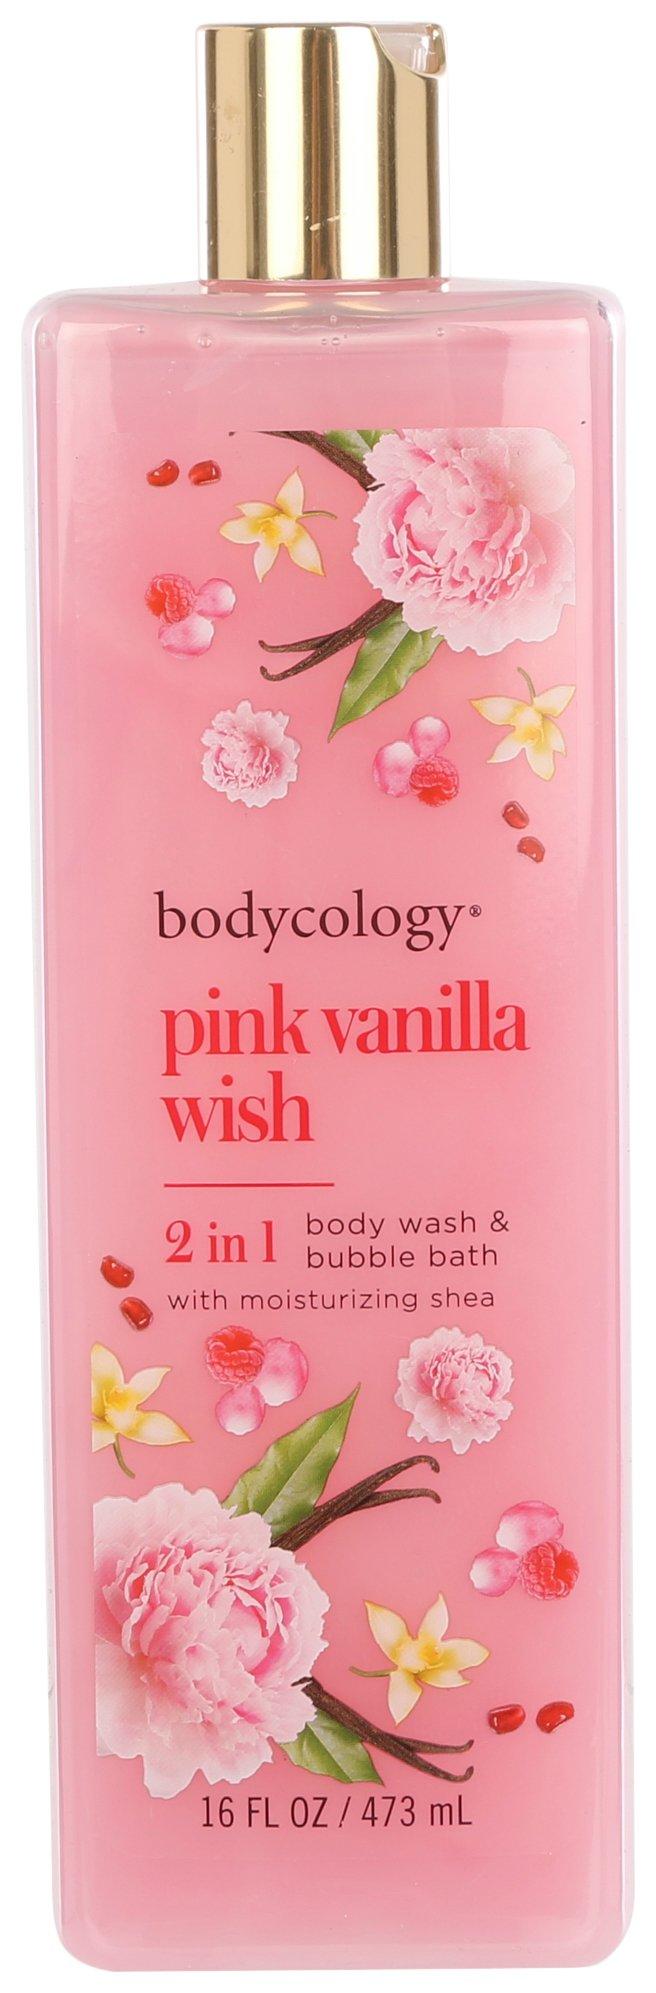 Pink Vanilla Wish Body Wash & Bubble Bath